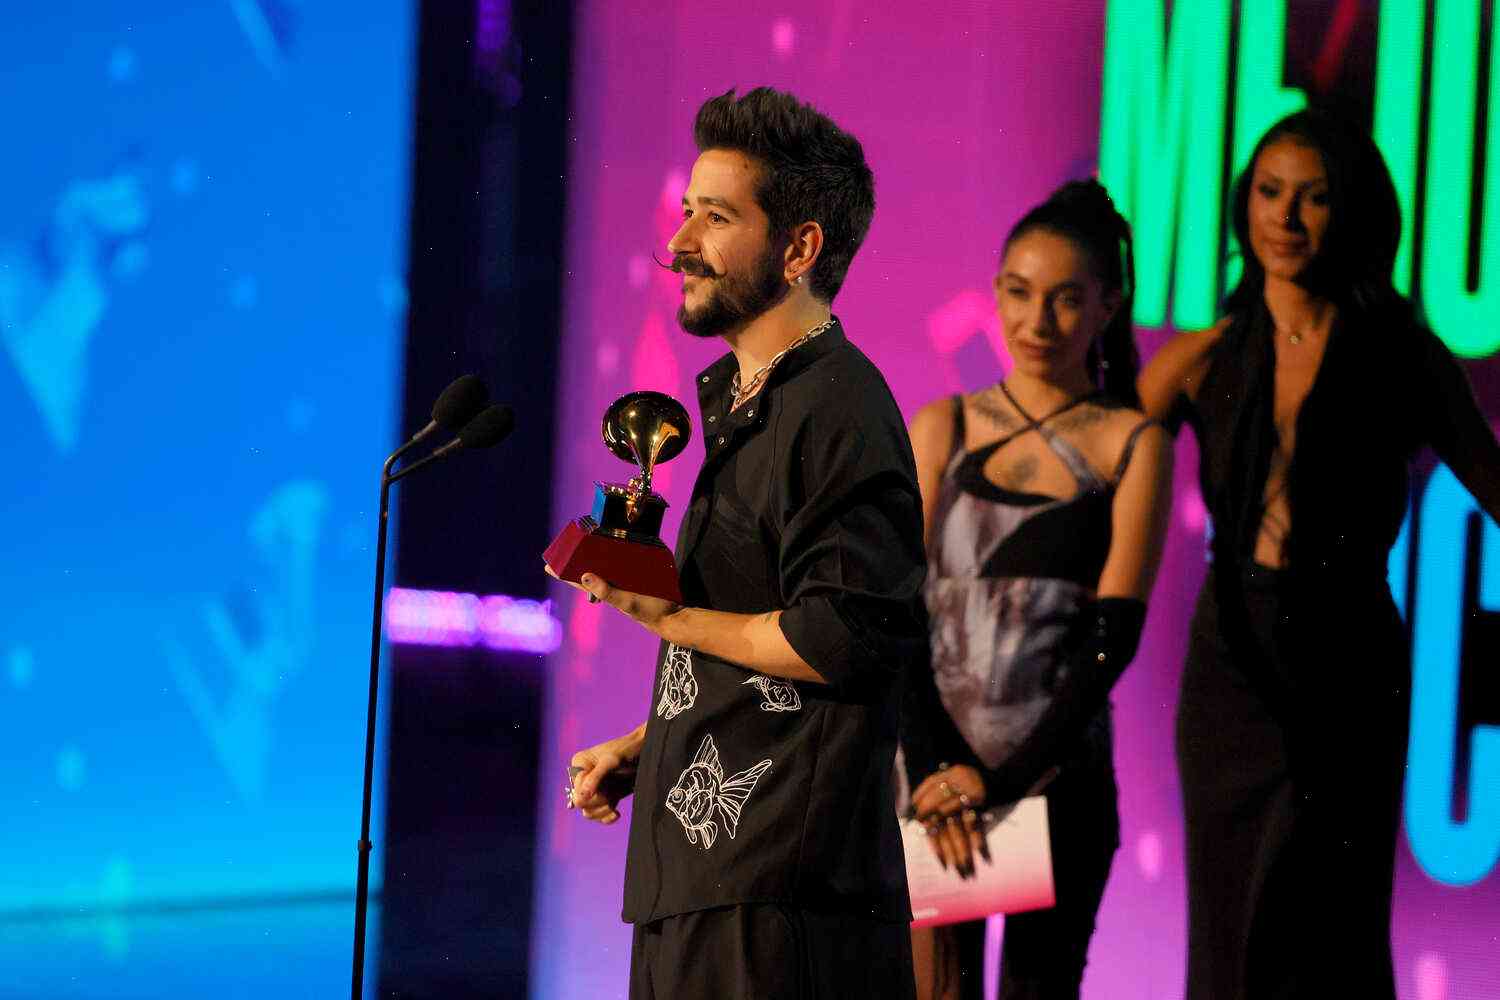 Video: María José Durán, Yandel receive Latin Grammys